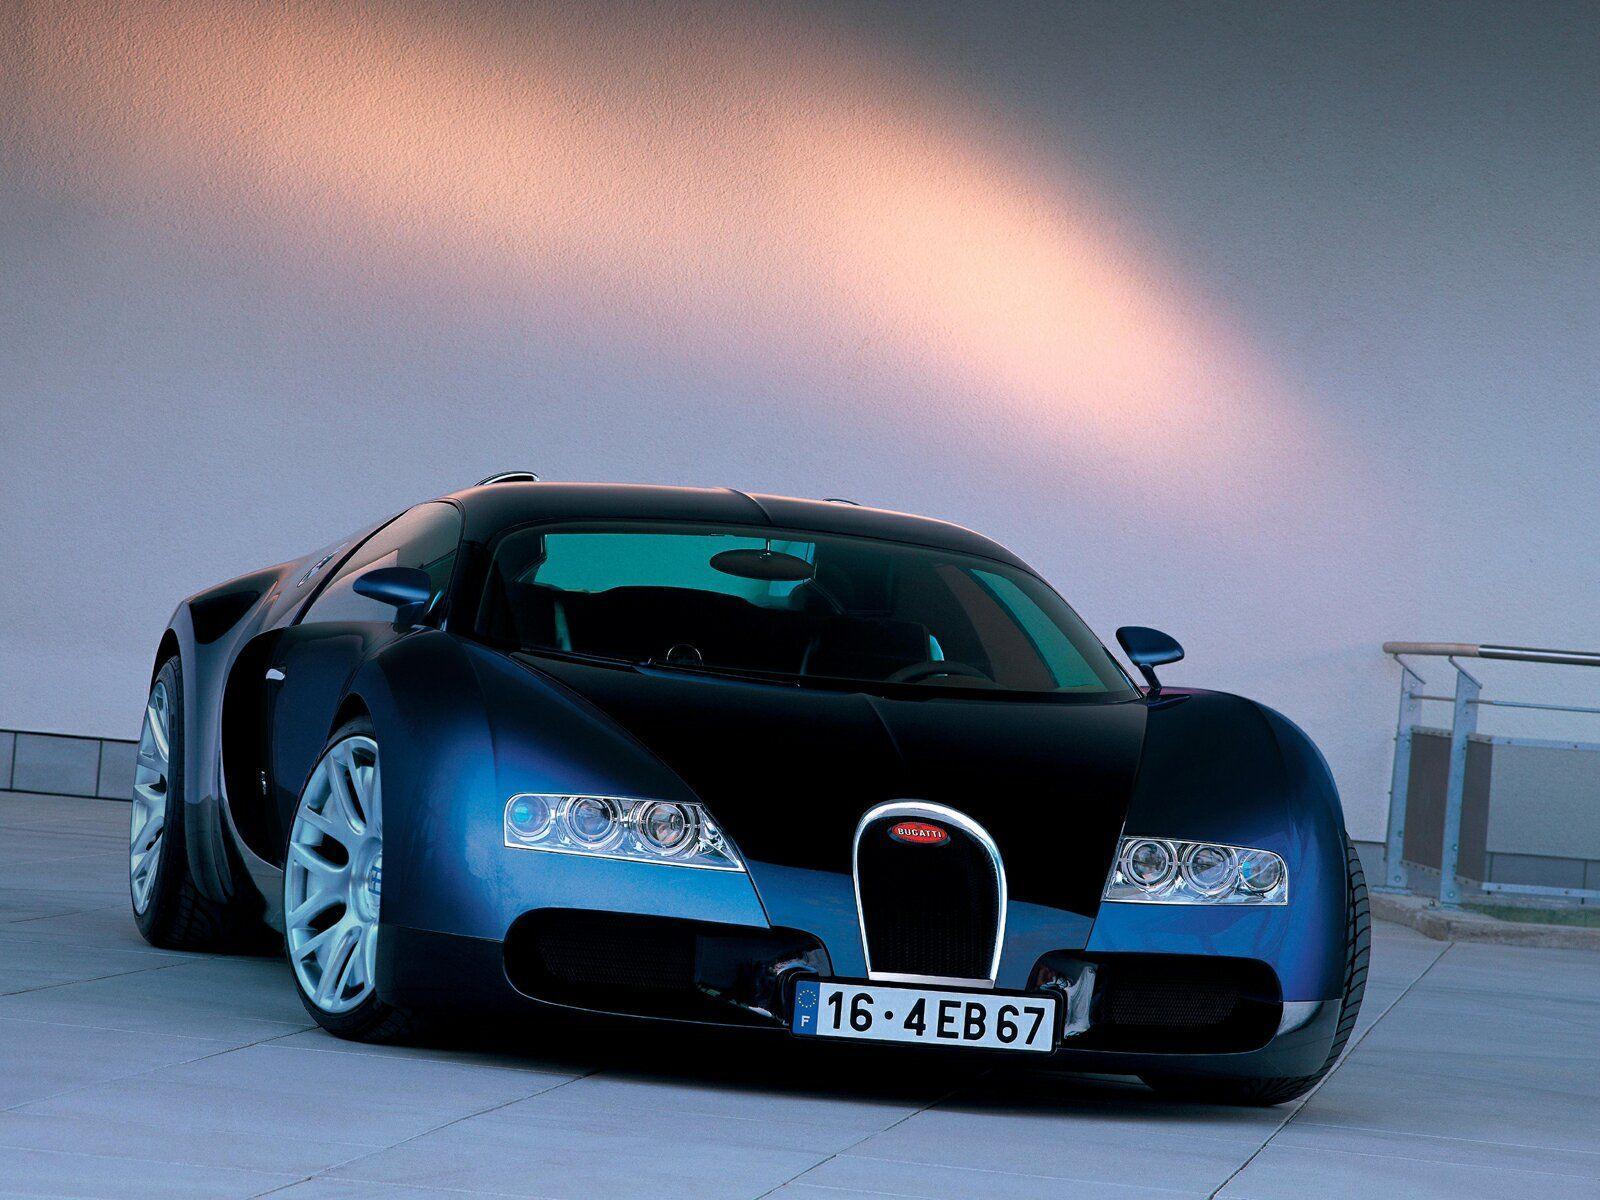 Outstanding Bugatti Picture and Wallpaper